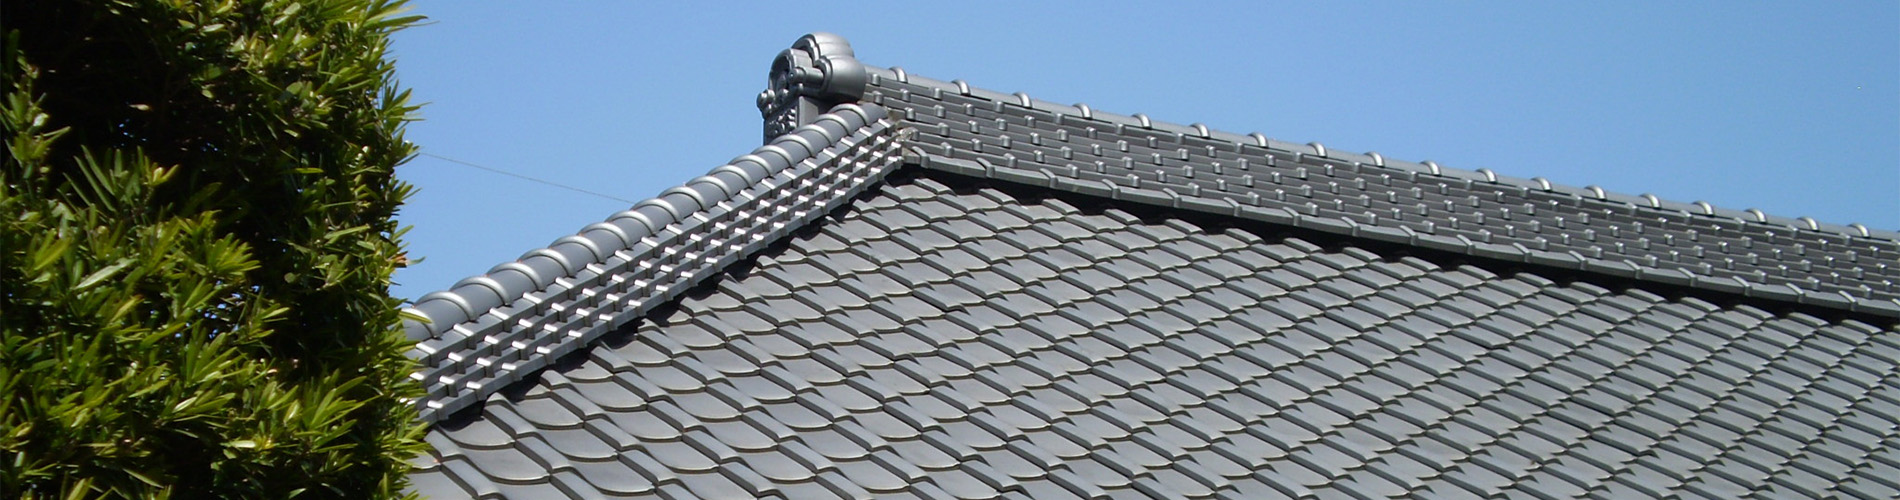 屋根修理・屋根リフォームは創業100余年で施工実績豊富な香取市佐原の加藤瓦店にお任せください。